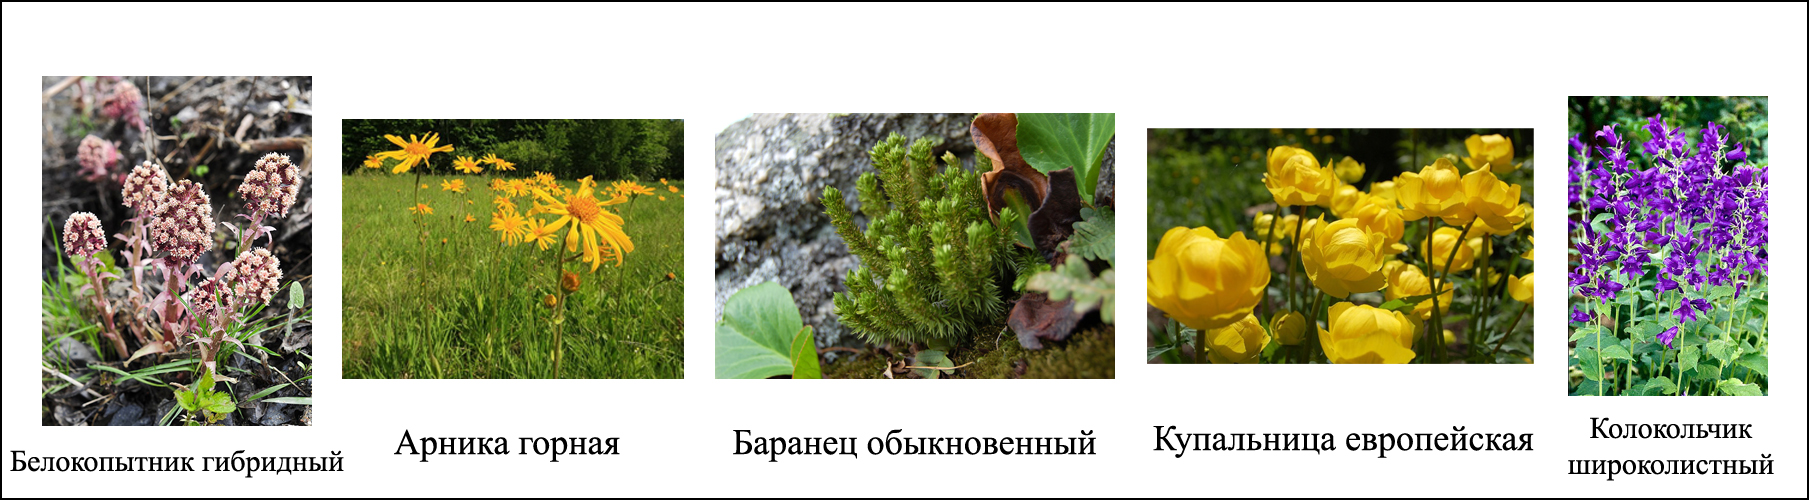 Красная книга республики беларусь растения фото и описание